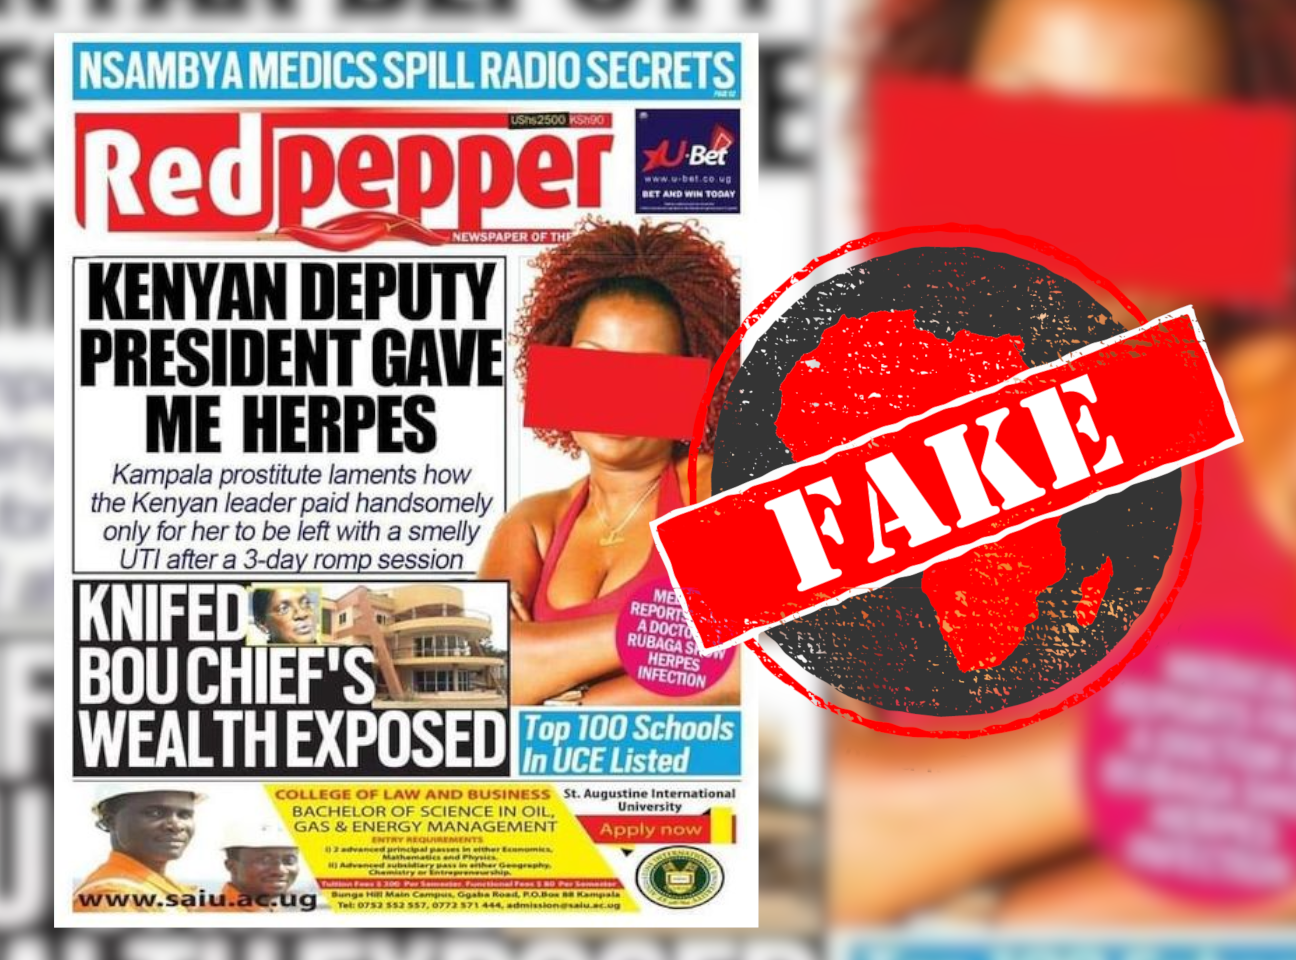  UgandaNewspaper_Fake